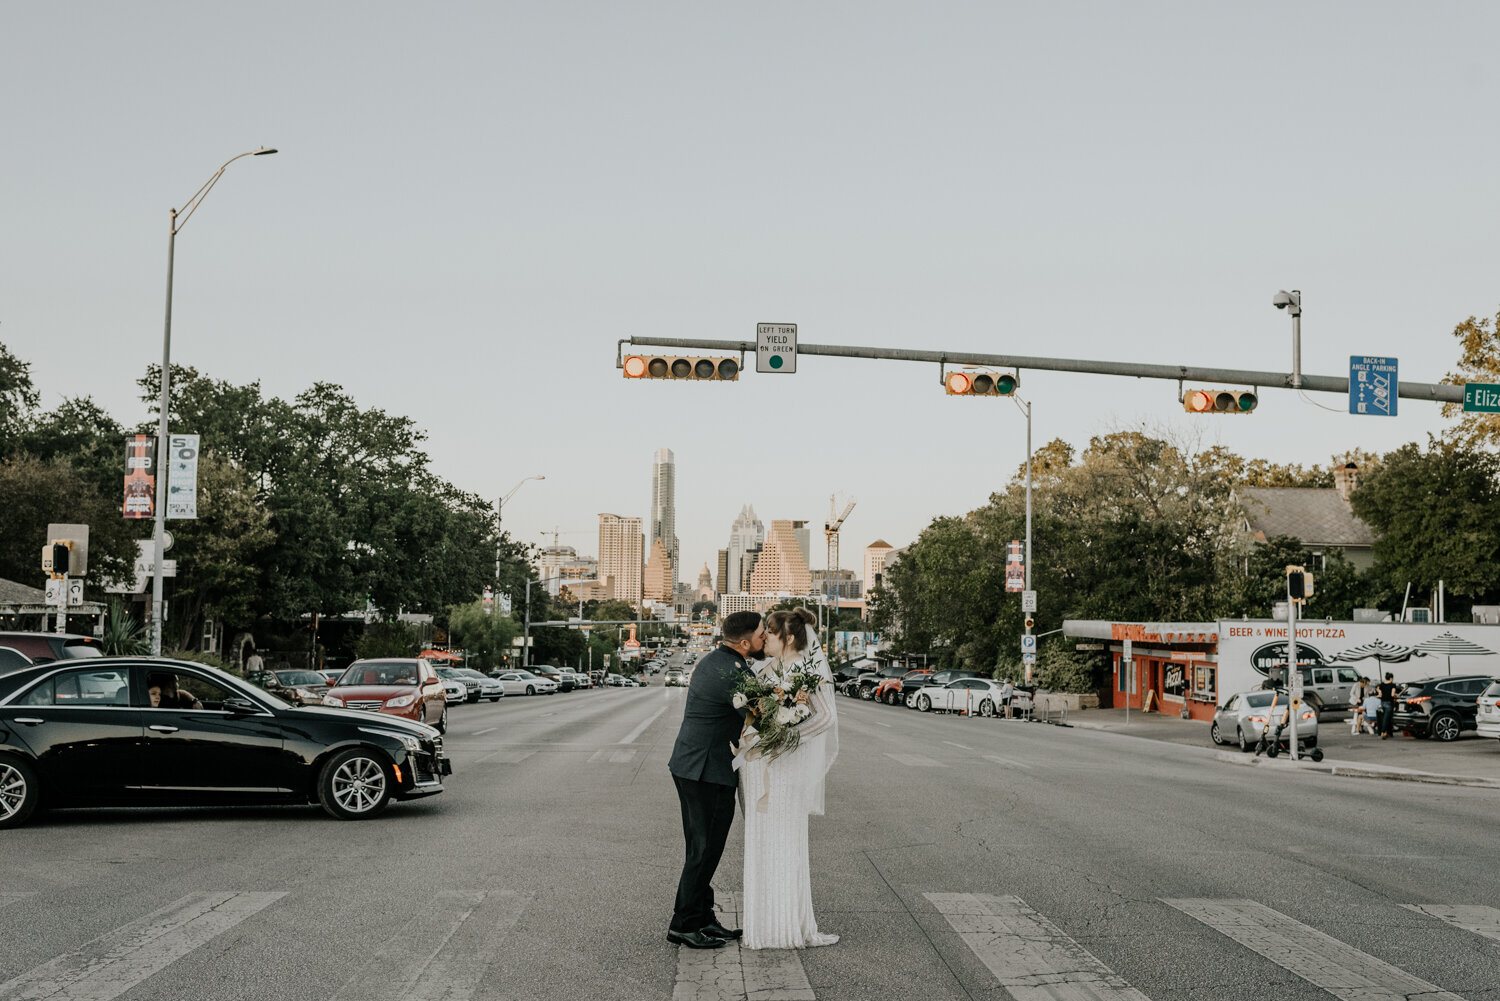 South Congress Avenue in Austin, Texas, Fun Wedding Photos